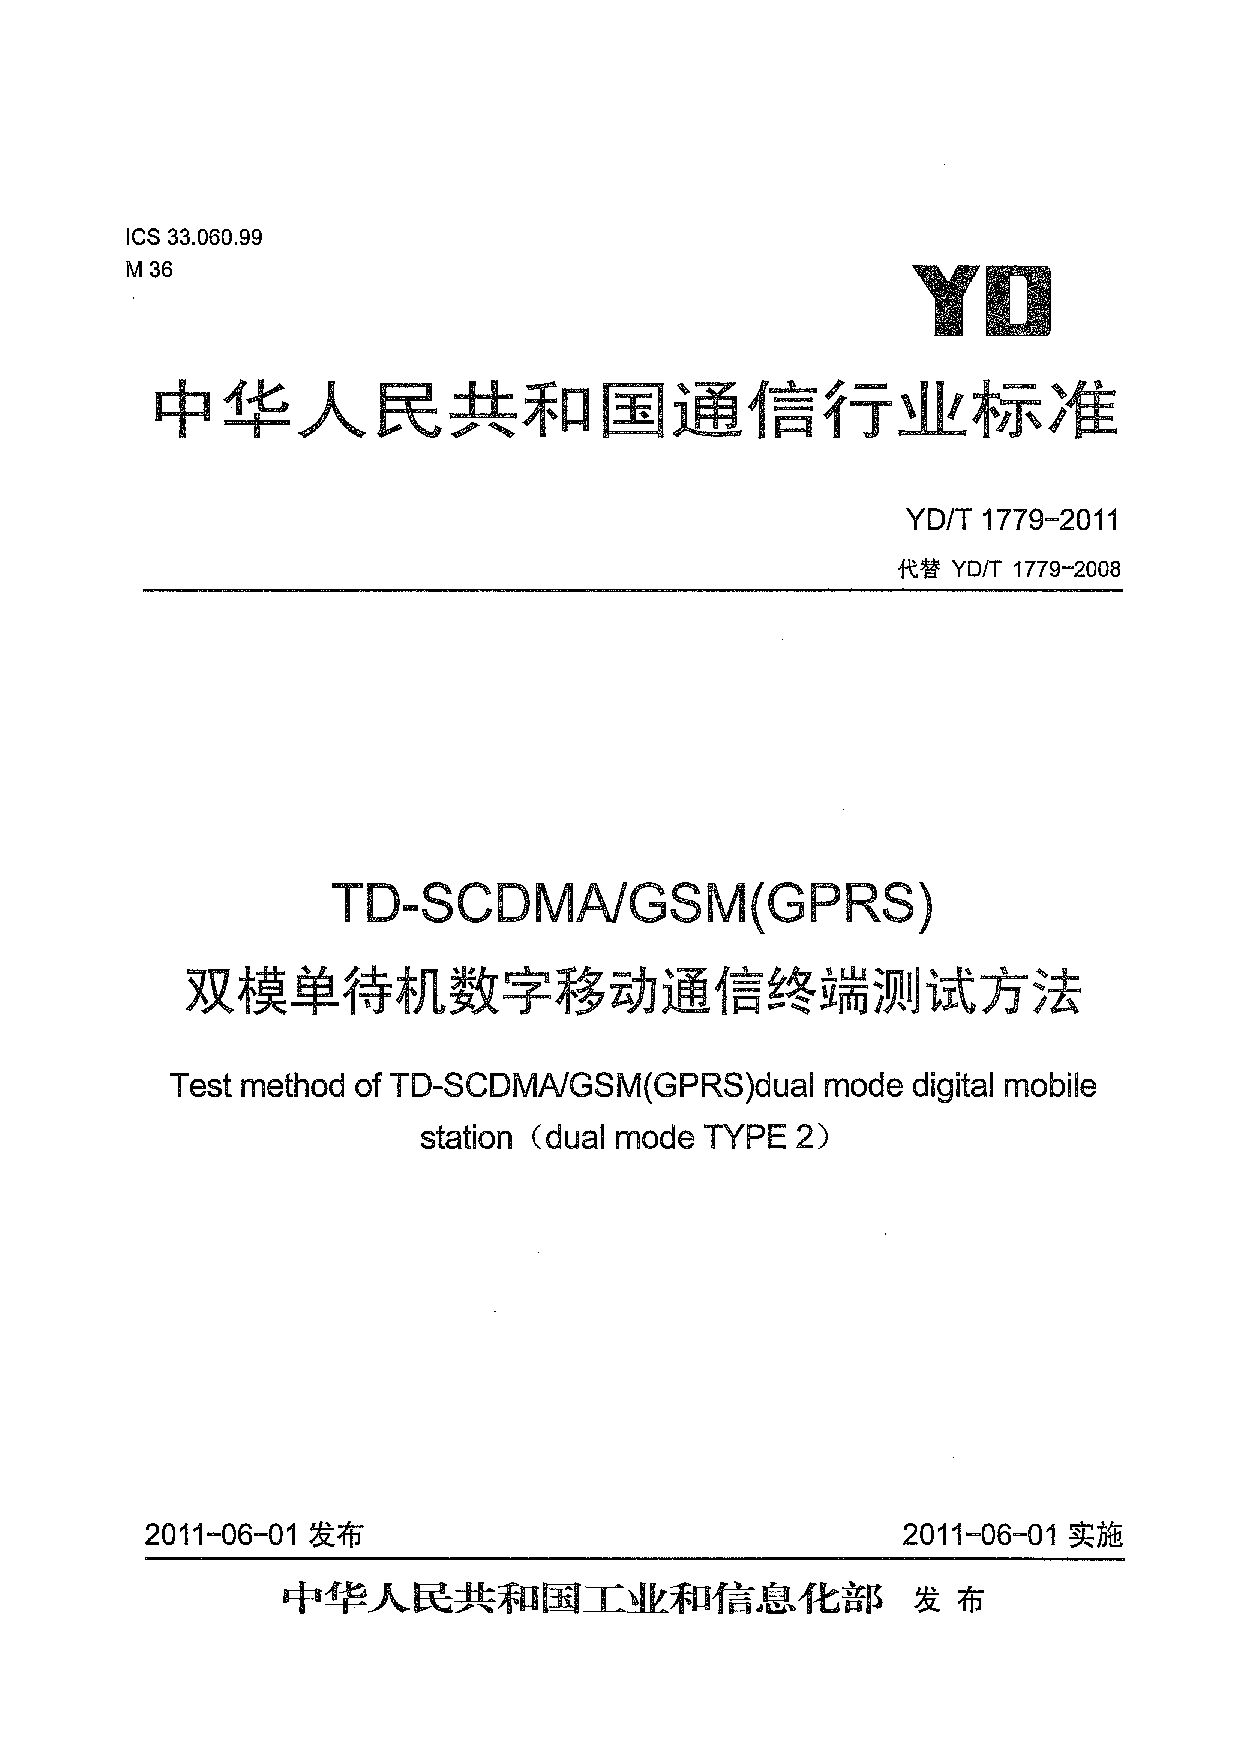 YD/T 1779-2011